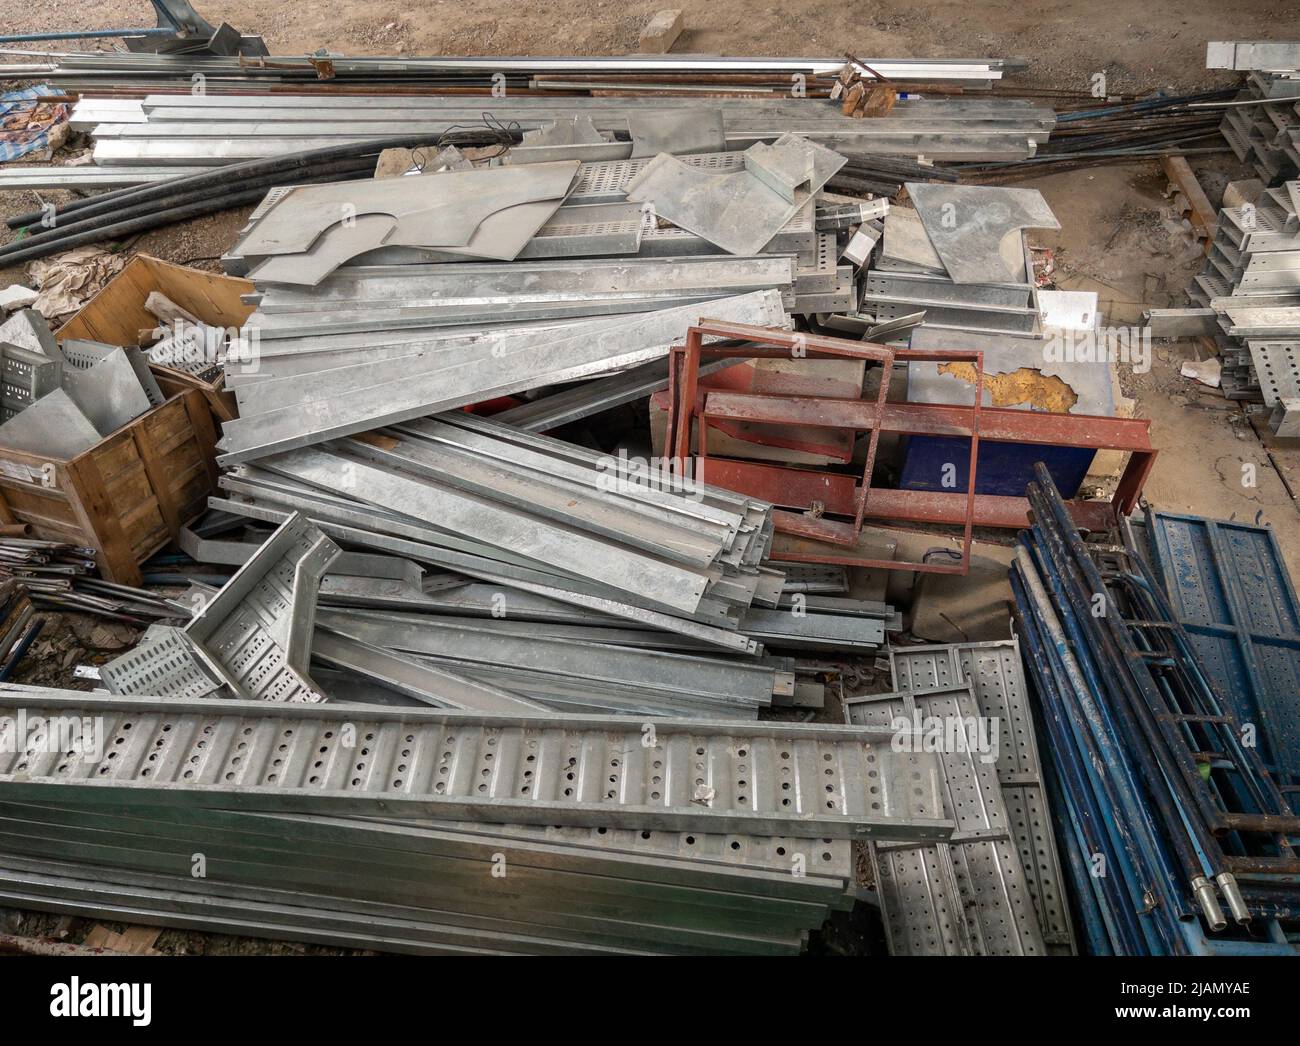 Gruppe der Metallrahmen und Ausrüstung Haufen auf dem Boden für den Bau des Baurahmens der Monorail-Station im städtischen Bereich zu bauen. Stockfoto